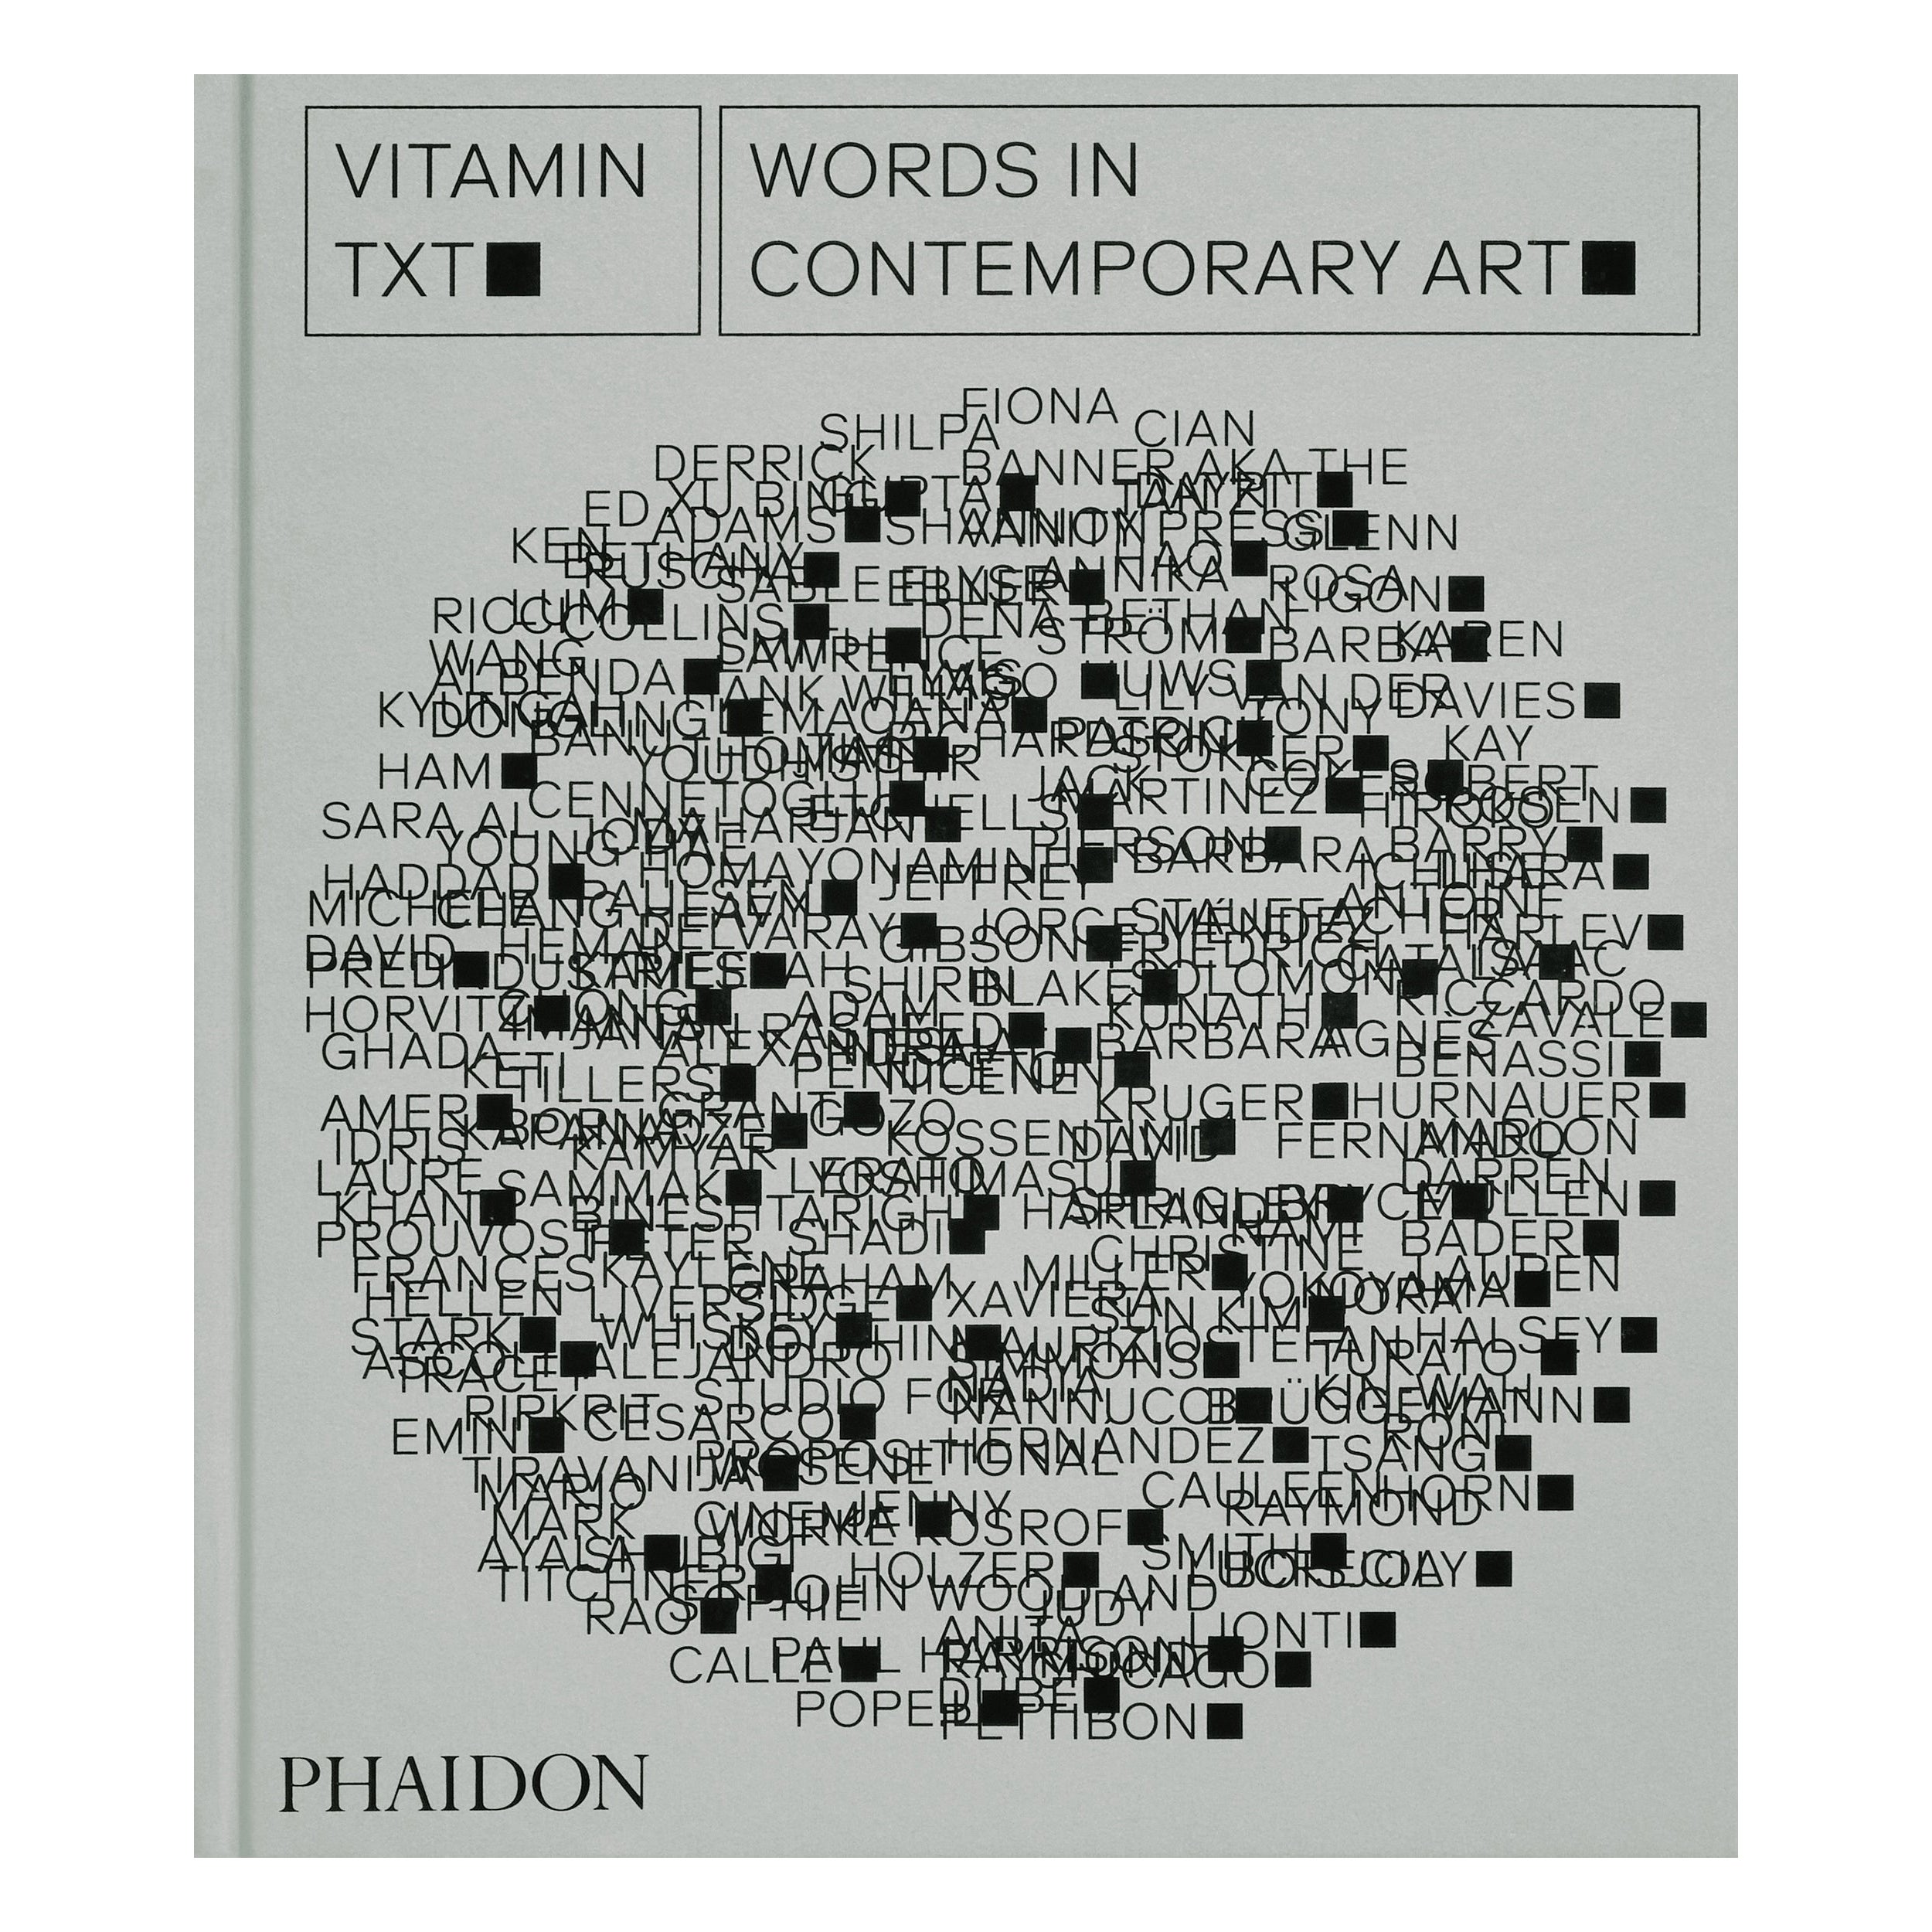 Vitamin Txt Wörter in der zeitgenössischen Kunst